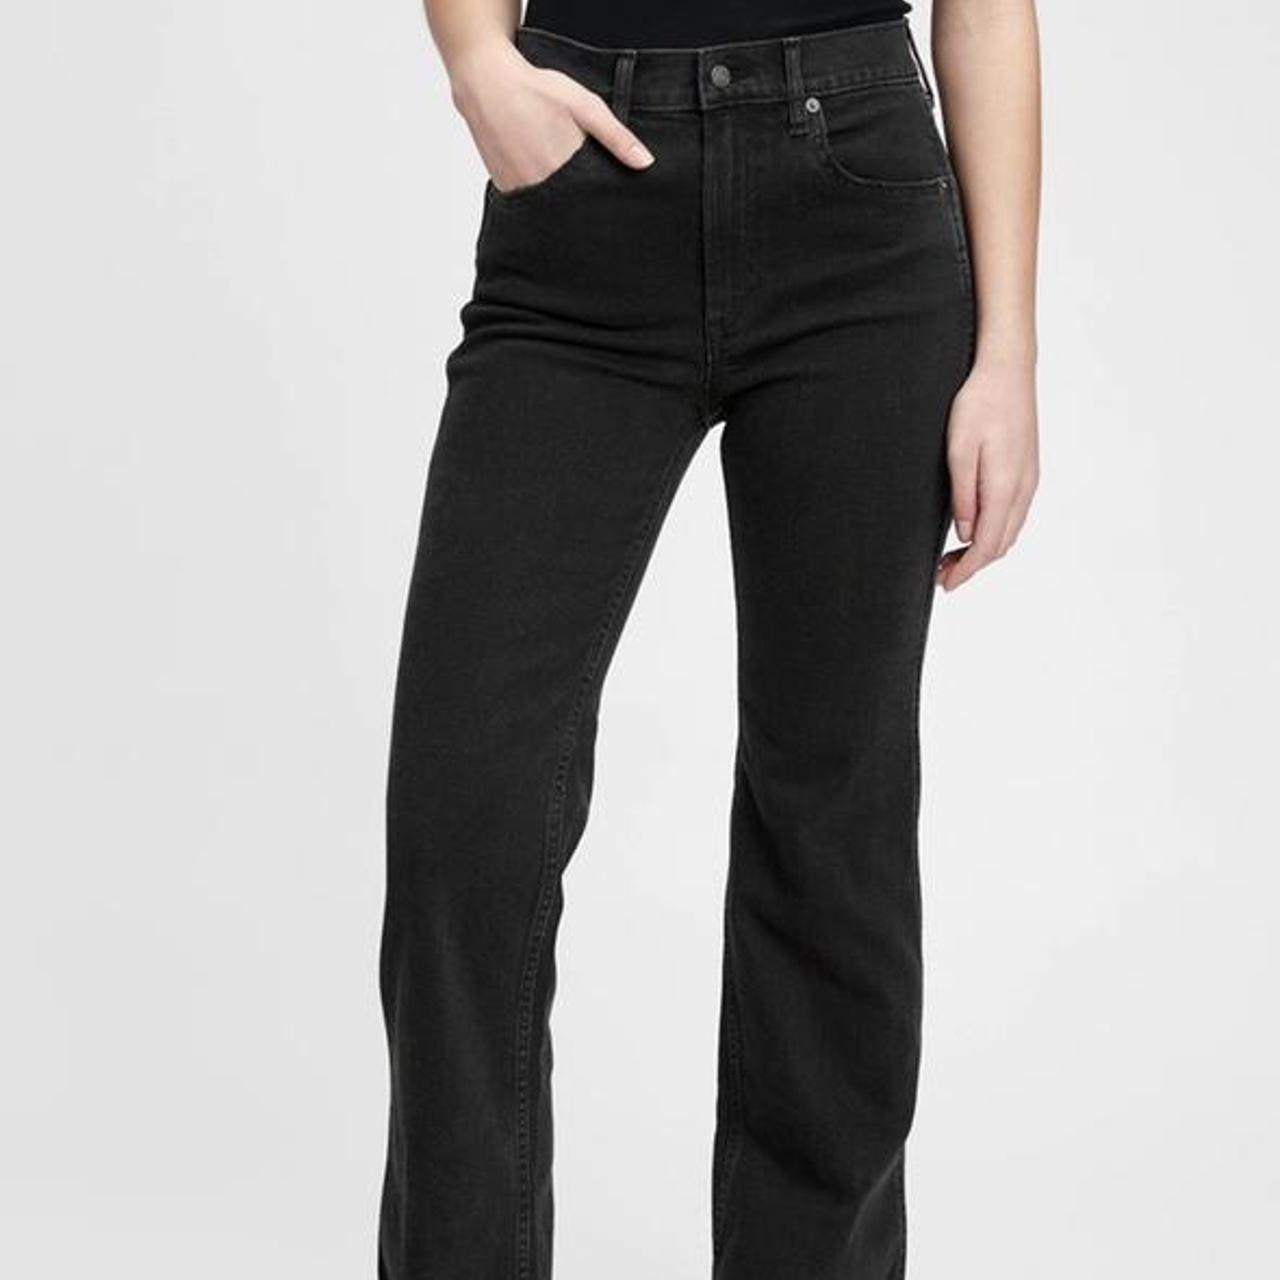 Gap vintage high rise flare jeans size 6 #gap... - Depop